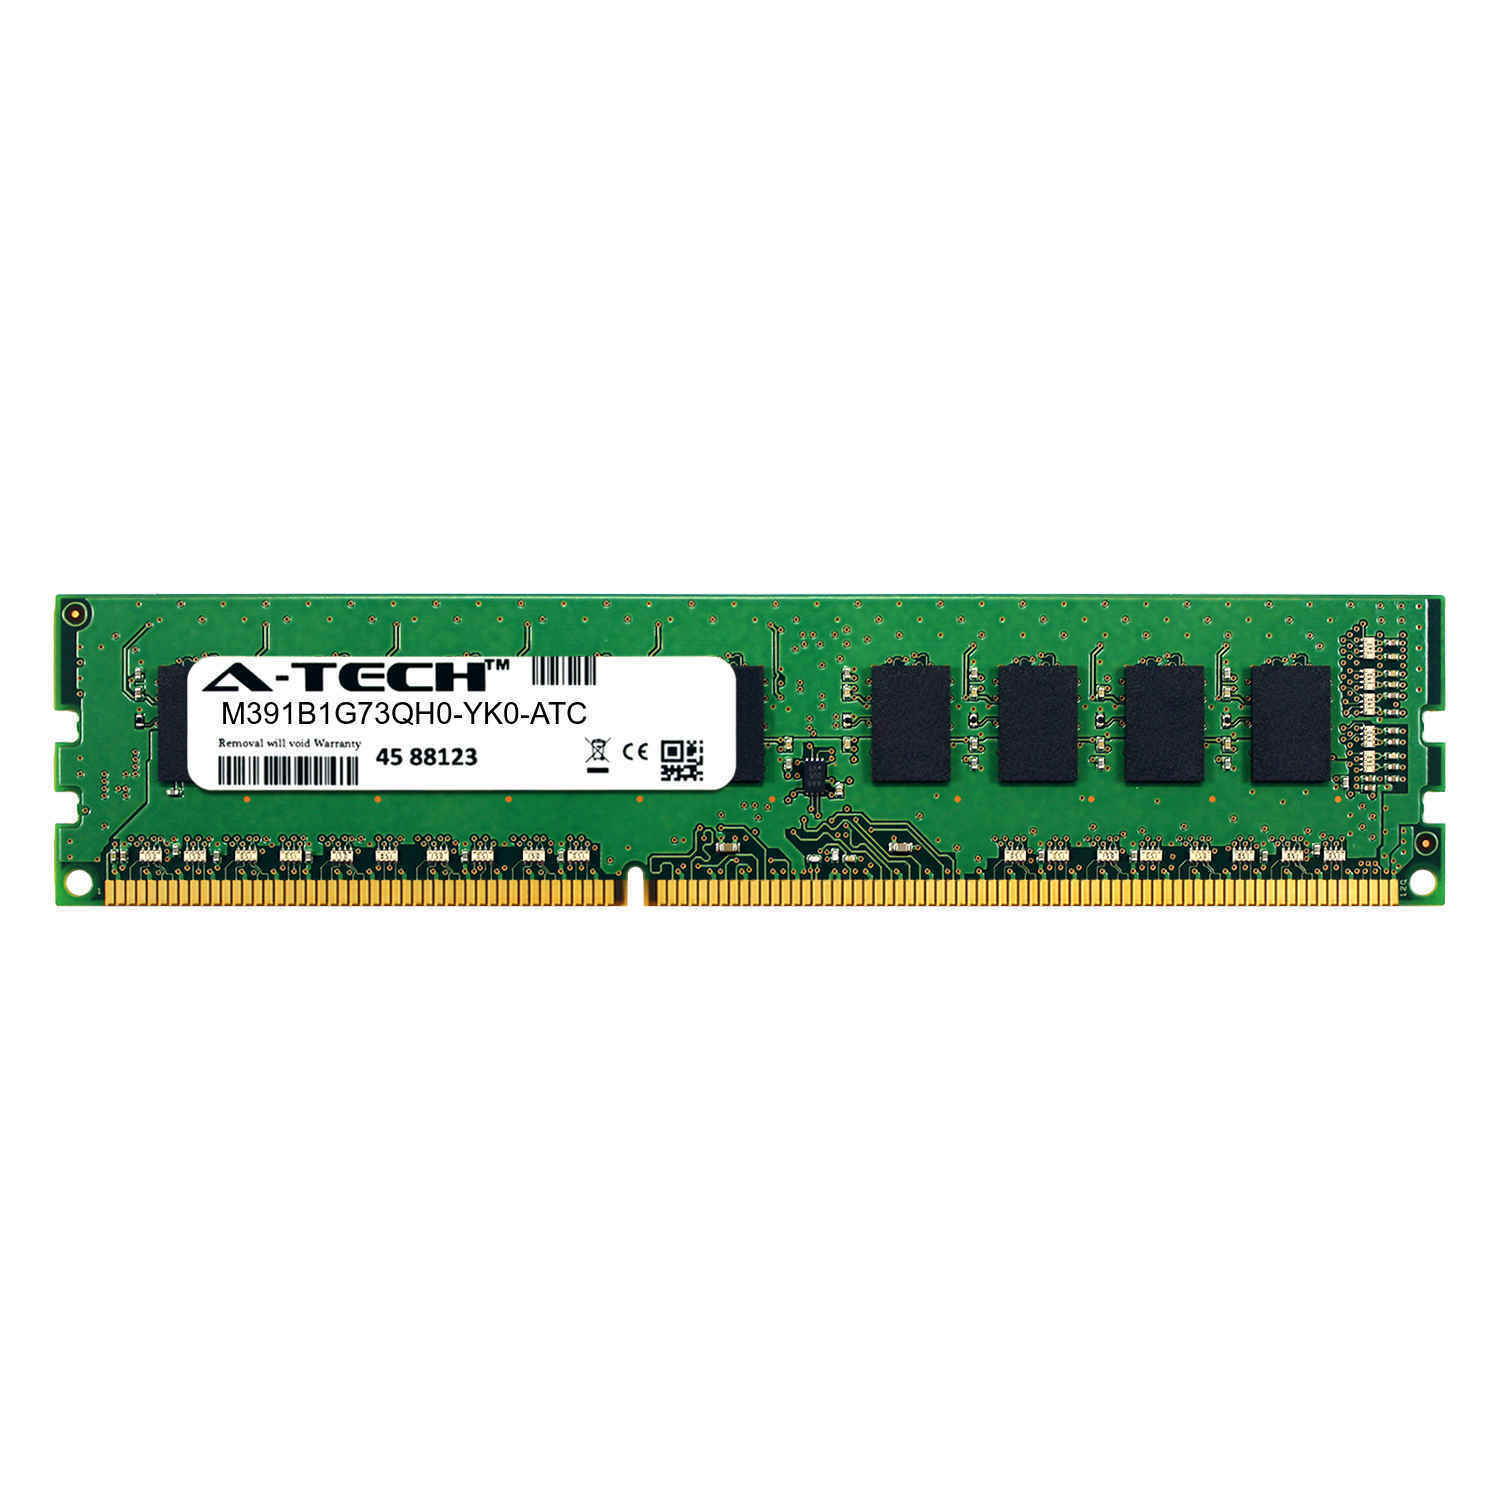 8GB PC3-12800E ECC UDIMM (Samsung M391B1G73QH0-YK0 Equivalent) Server Memory RAM